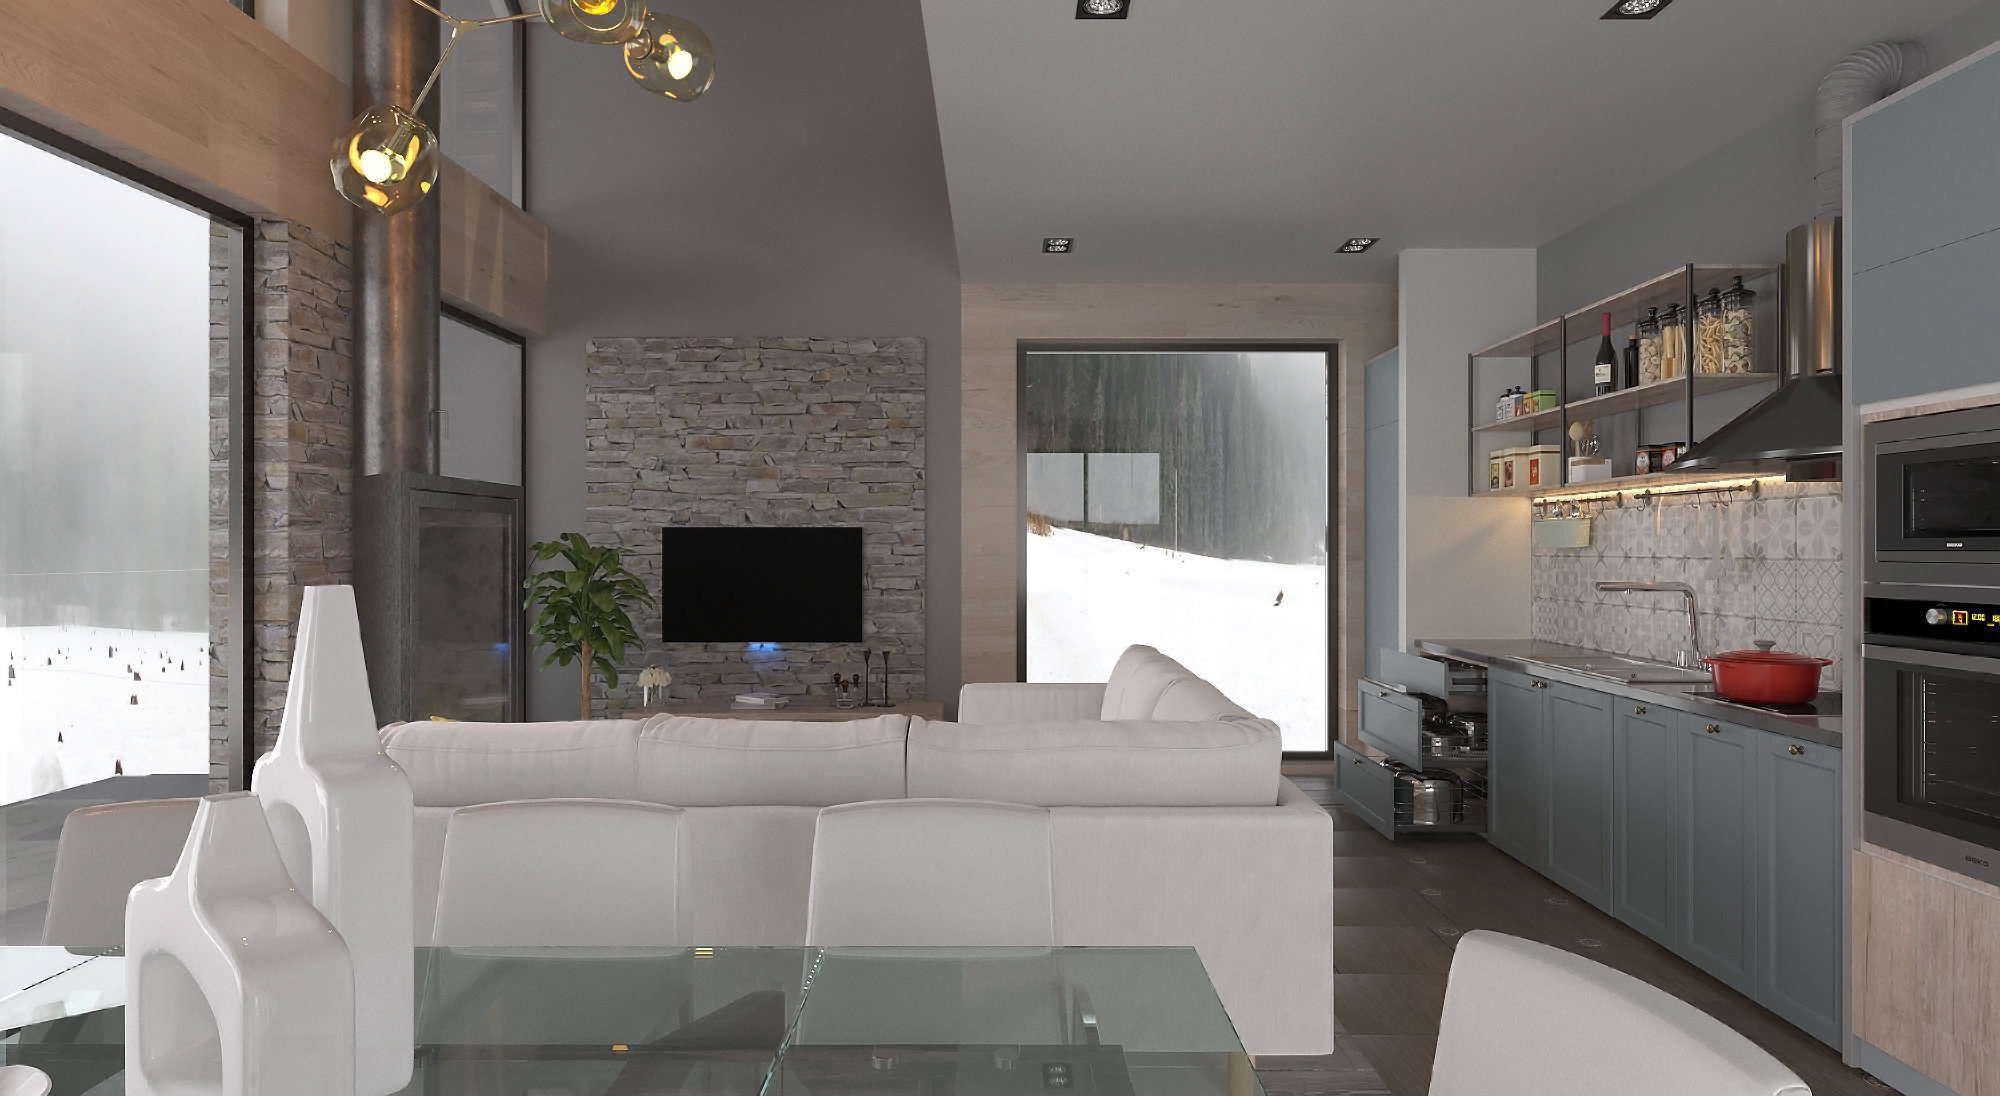 Пример чистовой внутренней отделки дома, Дизайн Фулл хаус. Гостиная + кухня 1 вид.